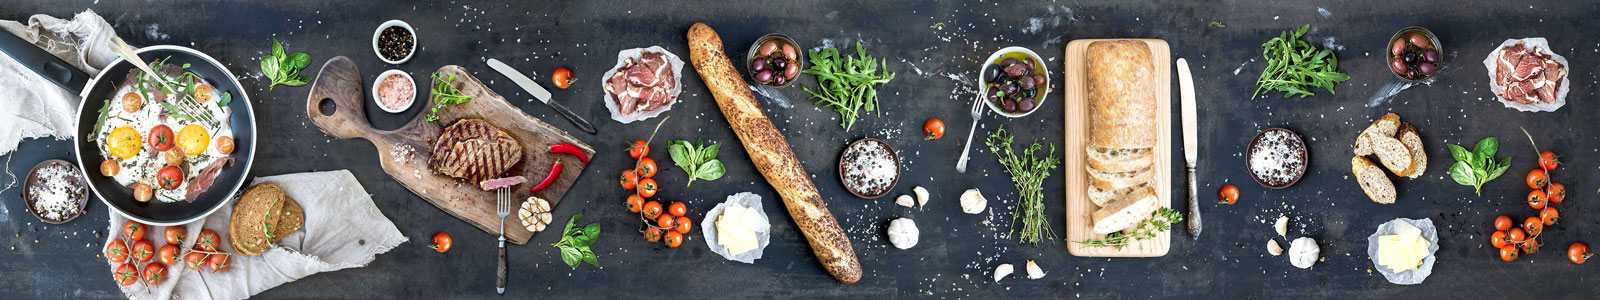 №5917 - Продукты и готовая еда на вашем столе